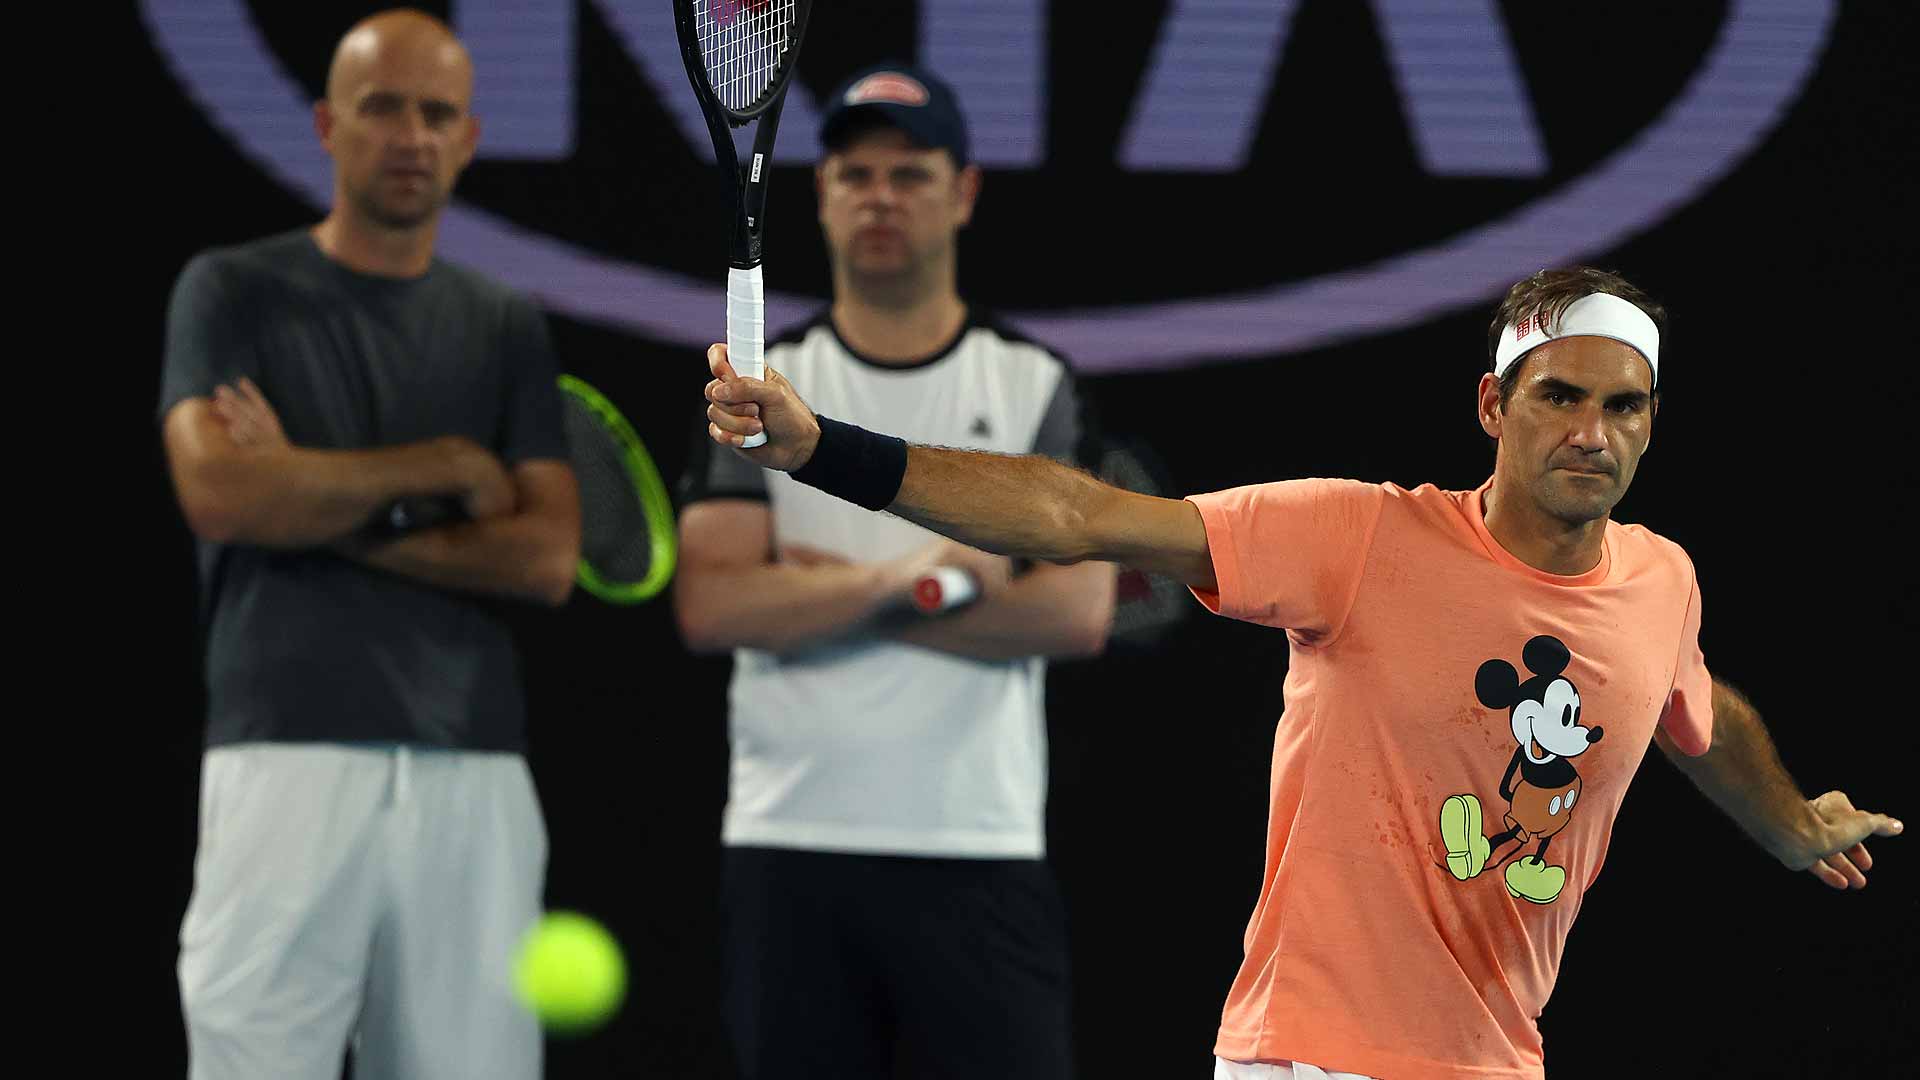 Ivan Ljubicic, Severin Luthi and Roger Federer